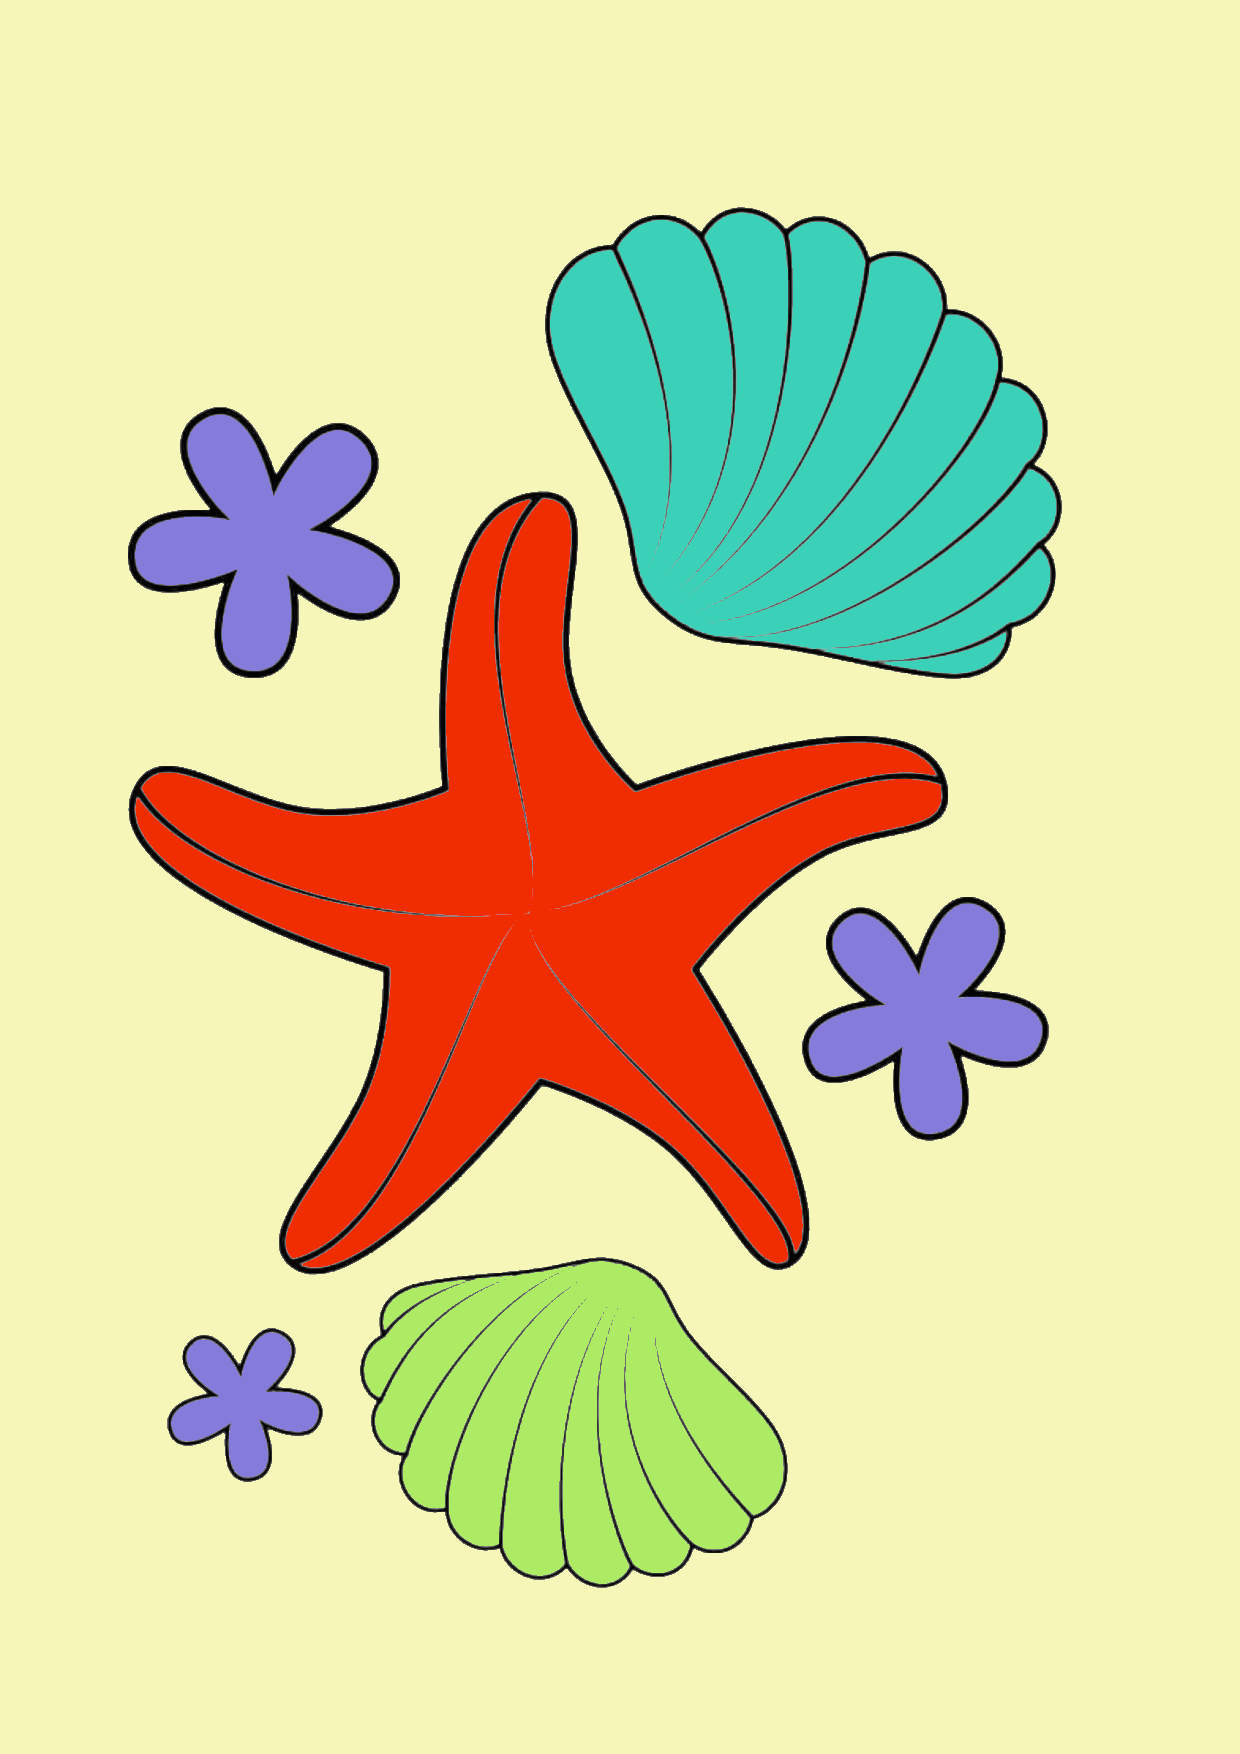 Tô màu sao biển và vỏ sò: Hãy cùng tô màu những hình vẽ của sao biển và vỏ sò để trở thành một họa sĩ thu nhỏ. Những hình ảnh đẹp mắt sẽ giúp bạn thư giãn và tận hưởng những giây phút vui vẻ và ý nghĩa cùng với gia đình và bạn bè.